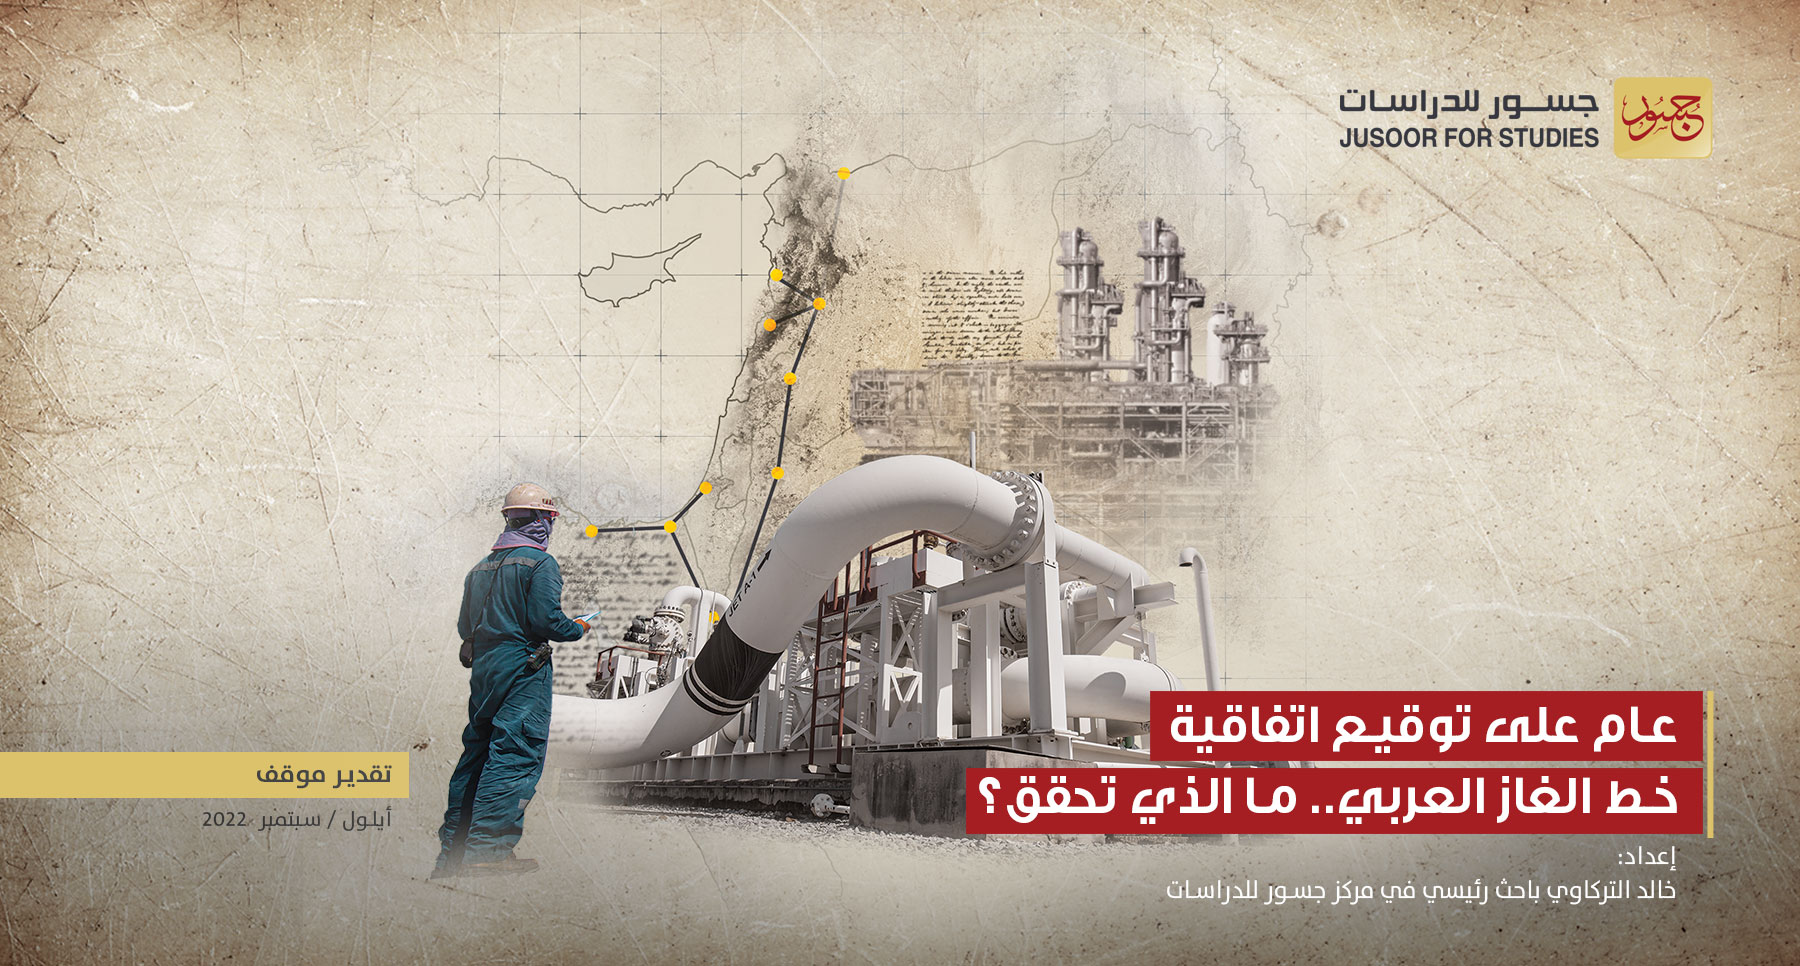 عام على توقيع اتفاقية خط الغاز العربي.. ما الذي تحقق؟